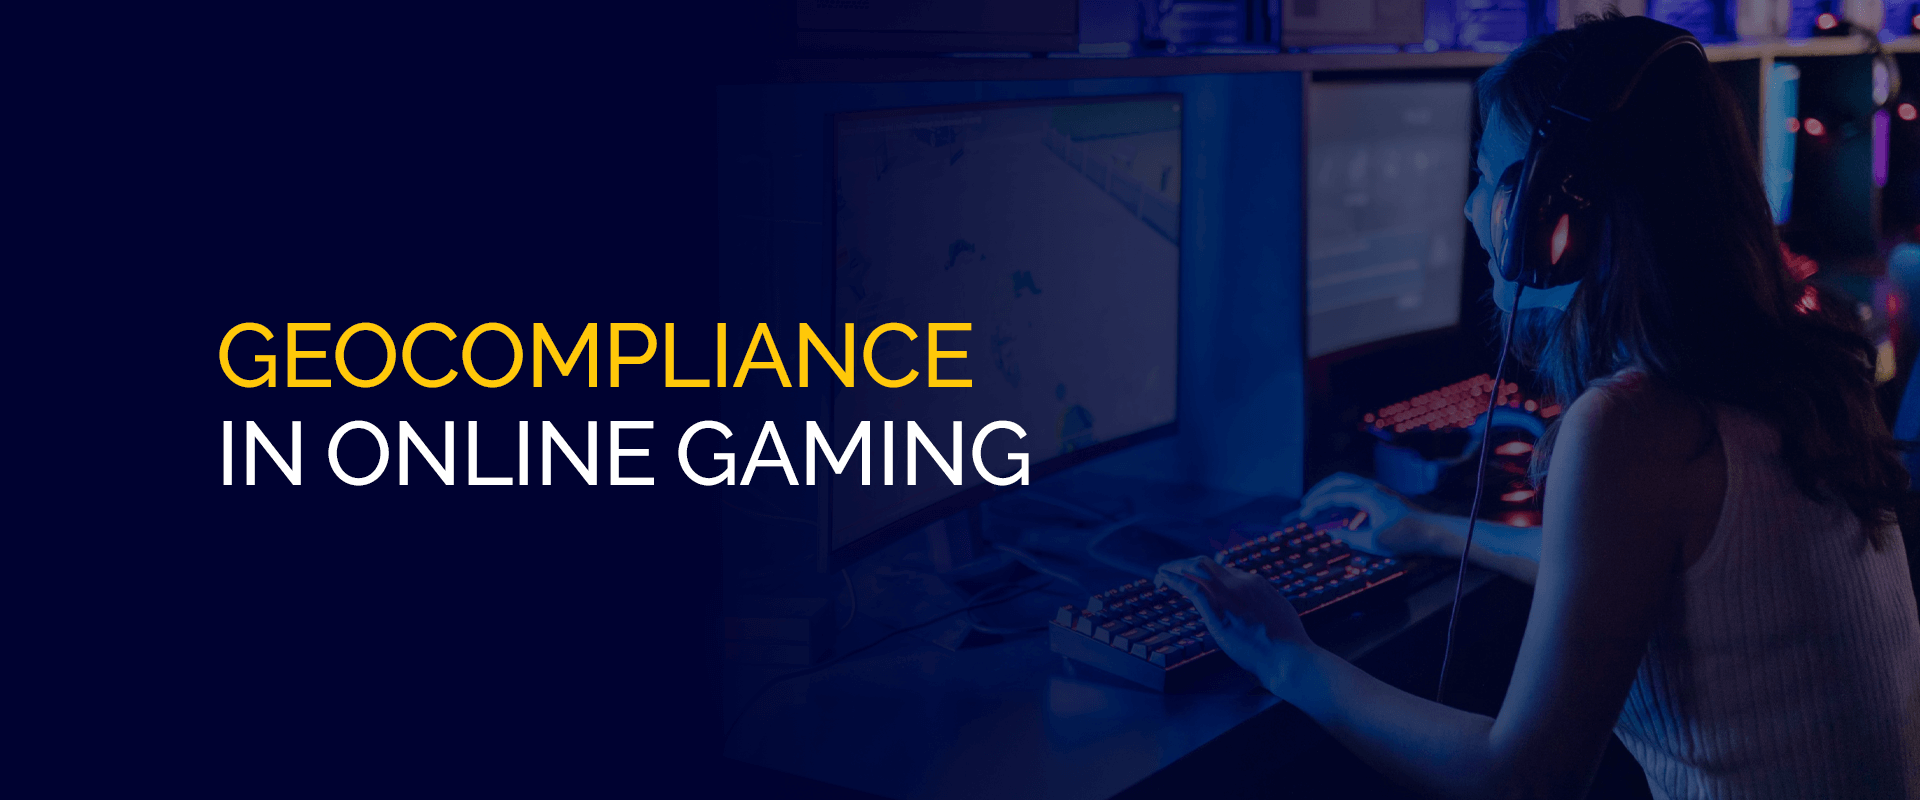 Geocompliance in Online Gaming